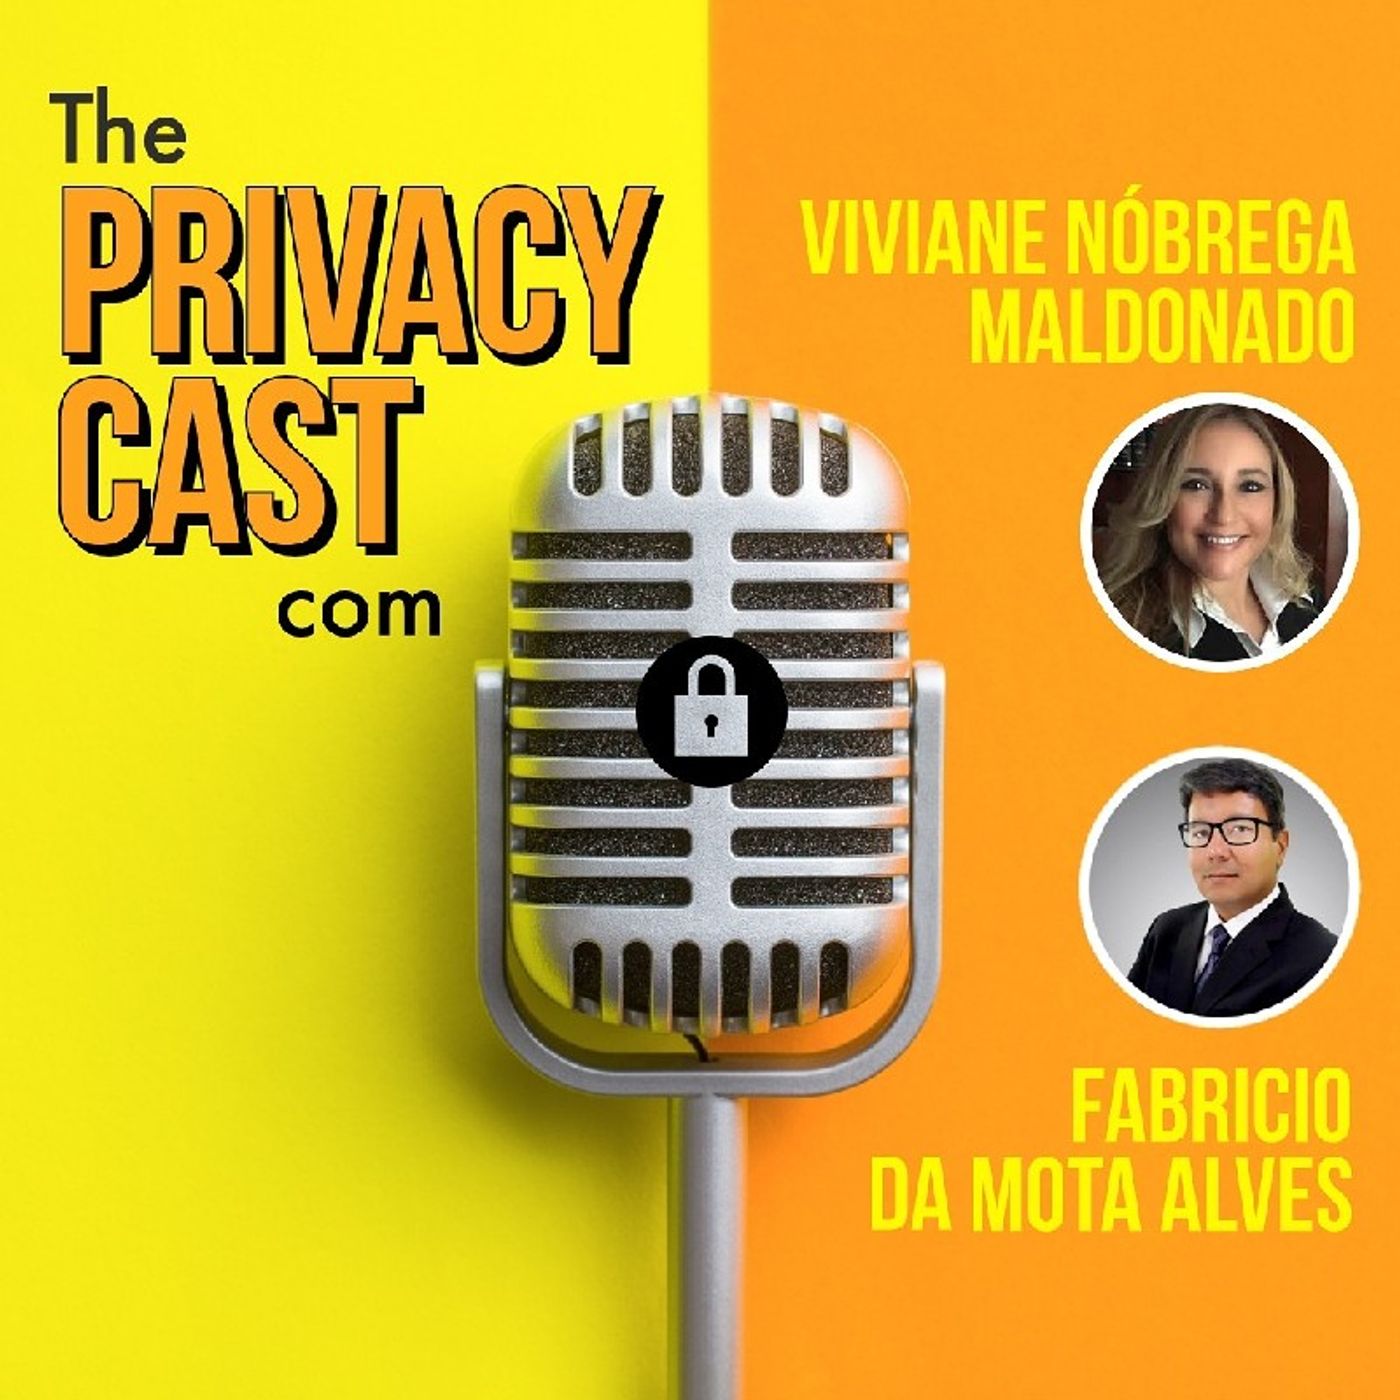 Multas da ICO, acordos regulatórios com FTC e vazamentos de dados pessoais no Brasil: noticias da semana que passou